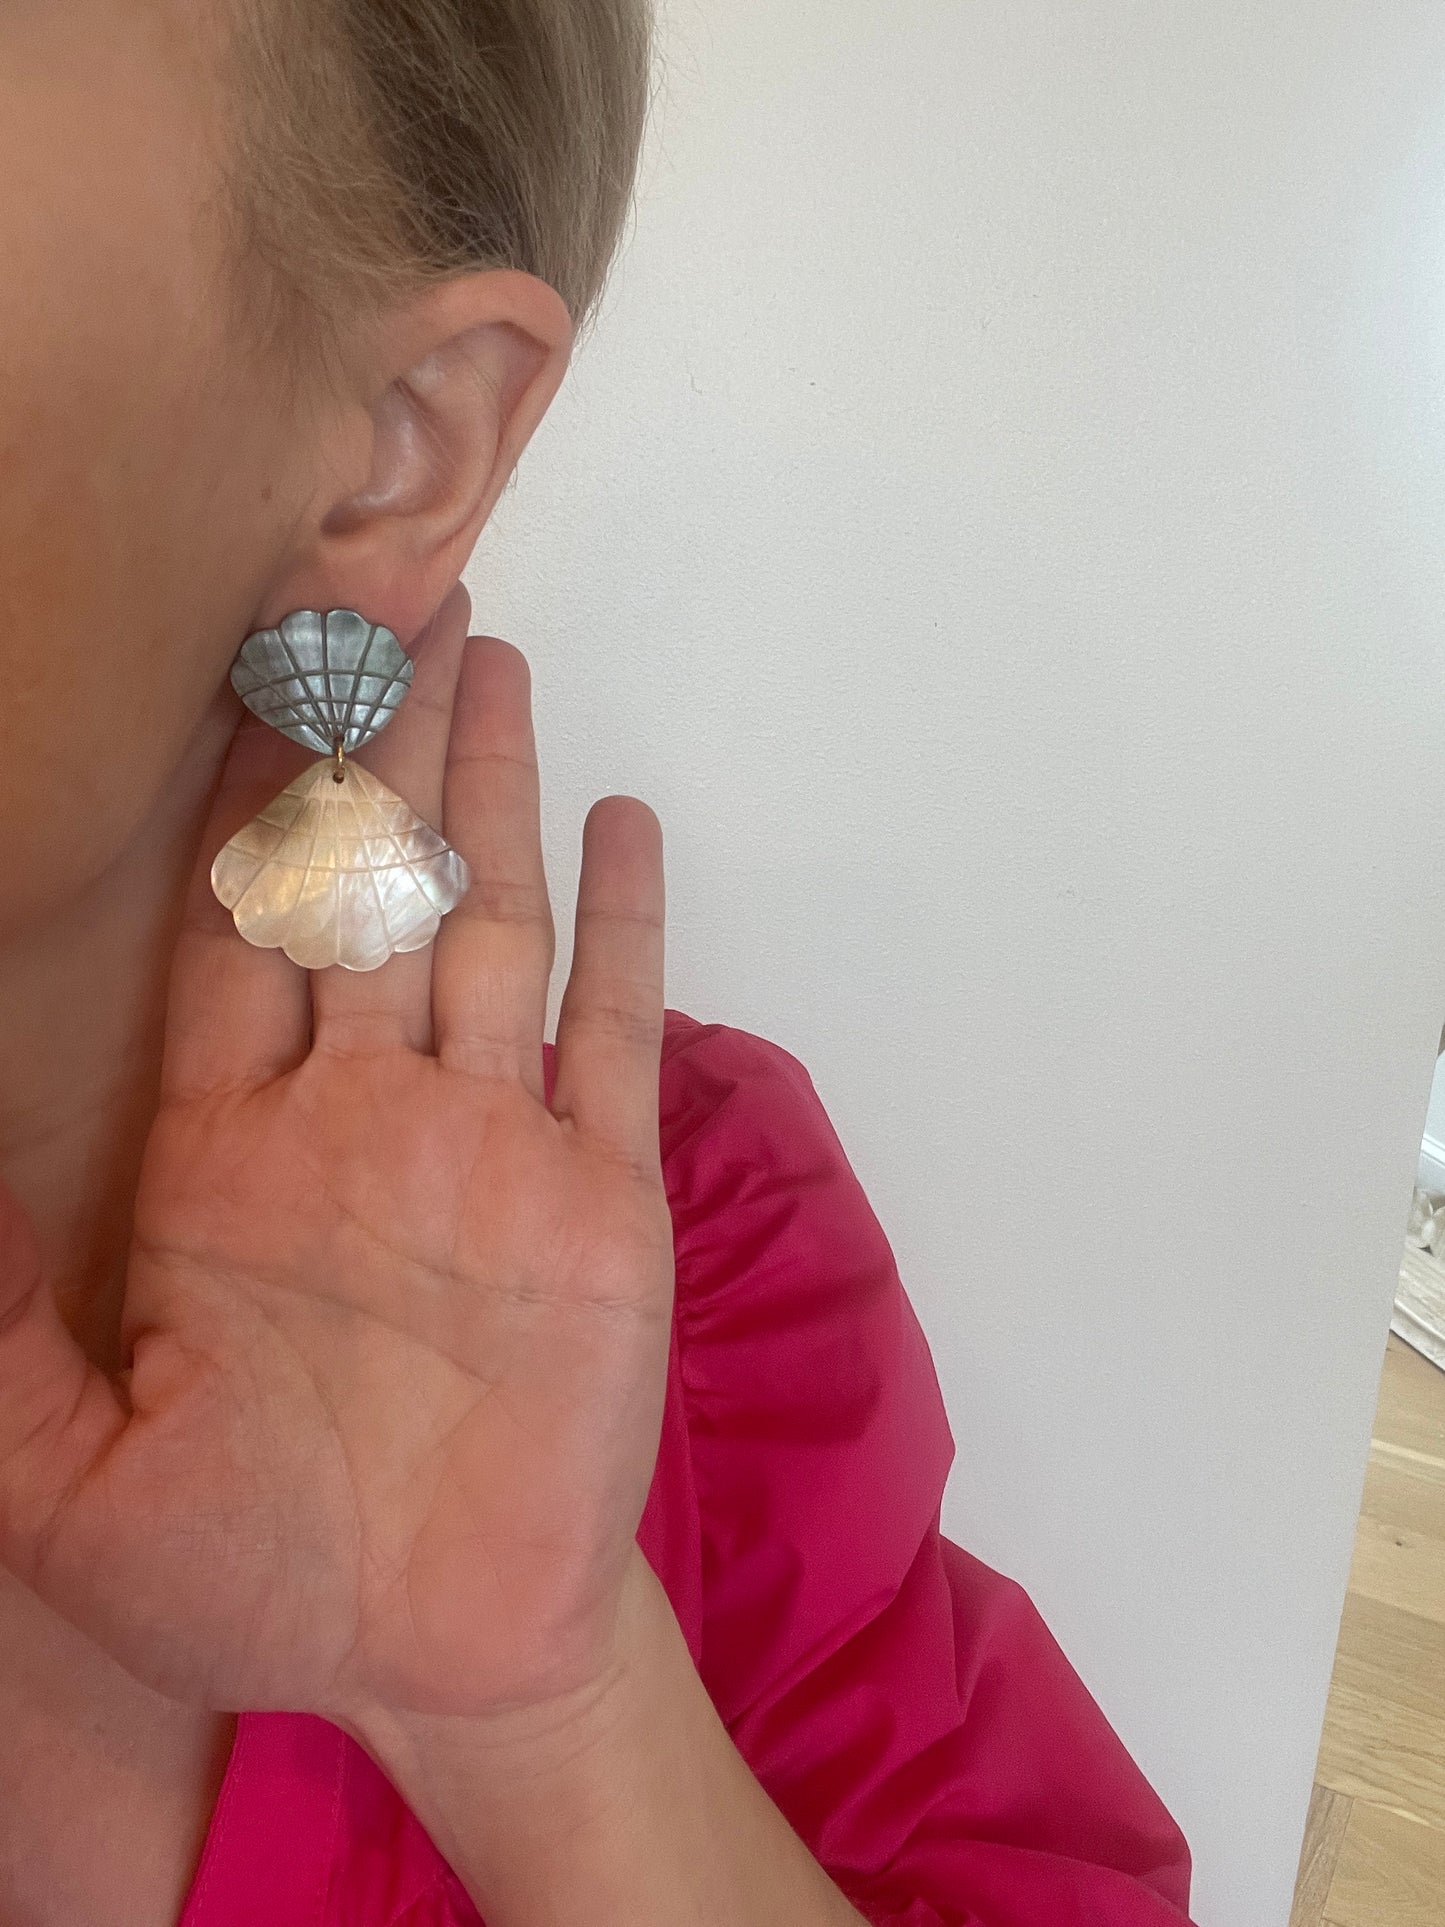 Seashell Clam Shape Earrings